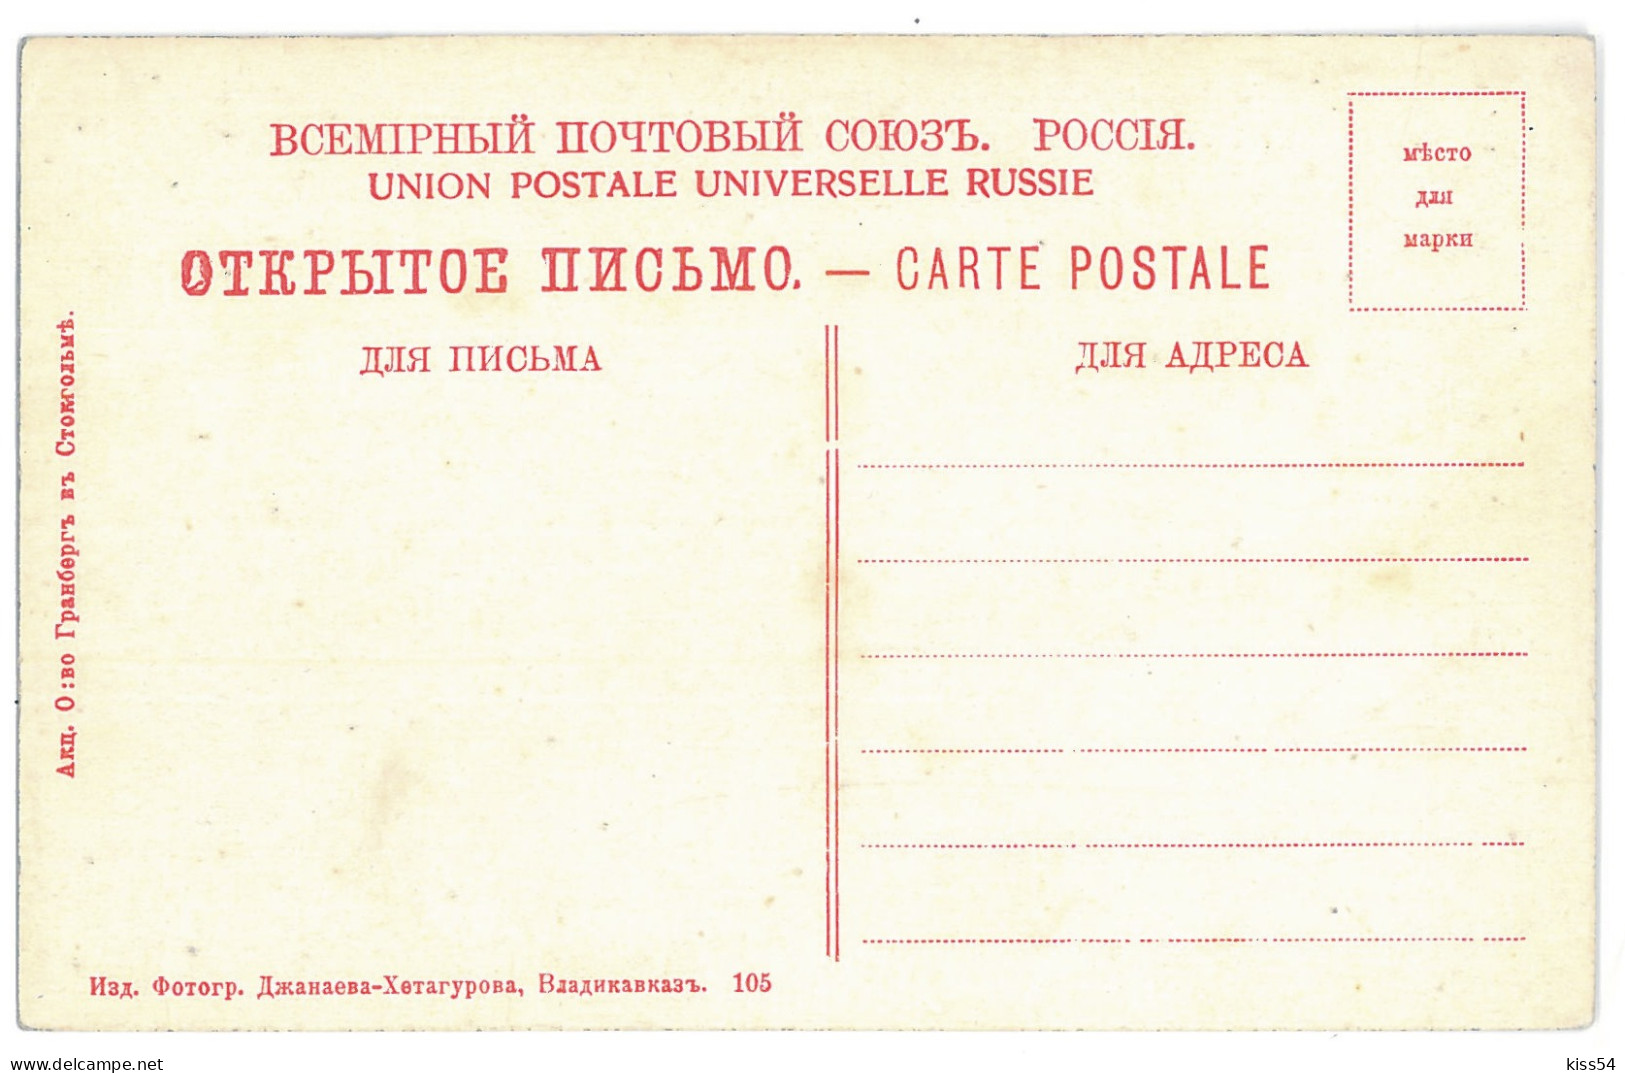 RUS 998 - 15271 DAGHESTAN, Bridge On KARA KOUISSOU, Russia - Old Postcard - Unused - Russia